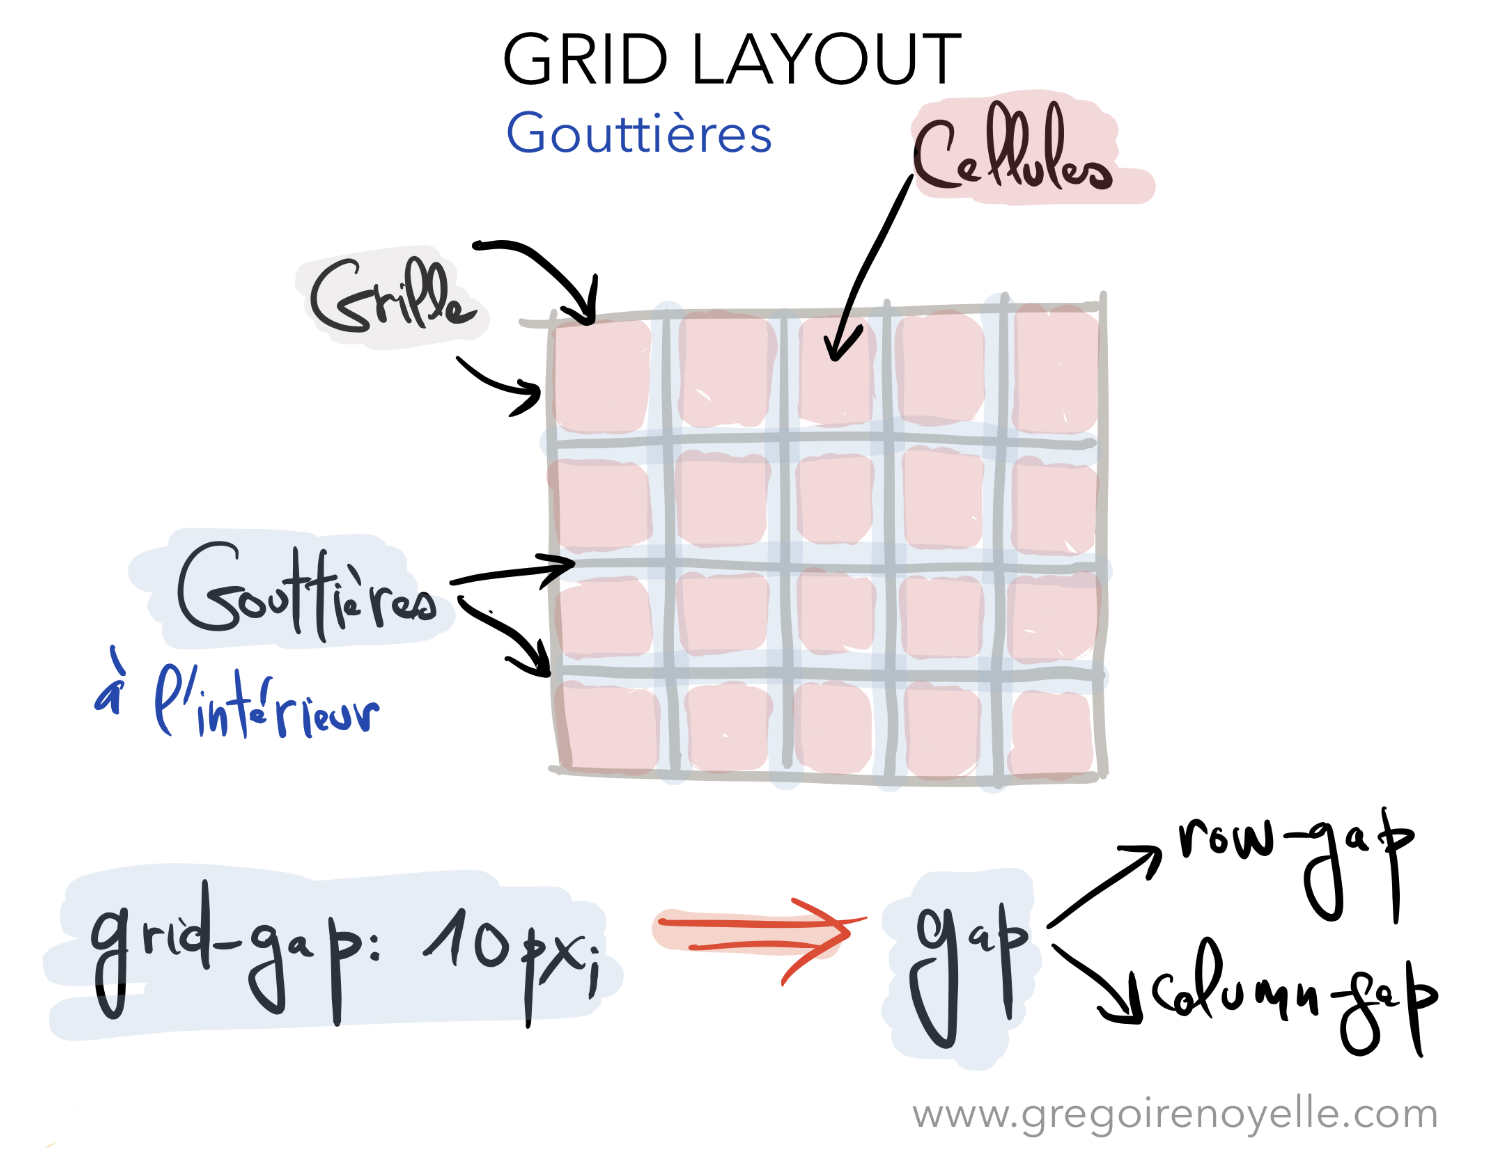 Gouttières dans Grid Layout CSS